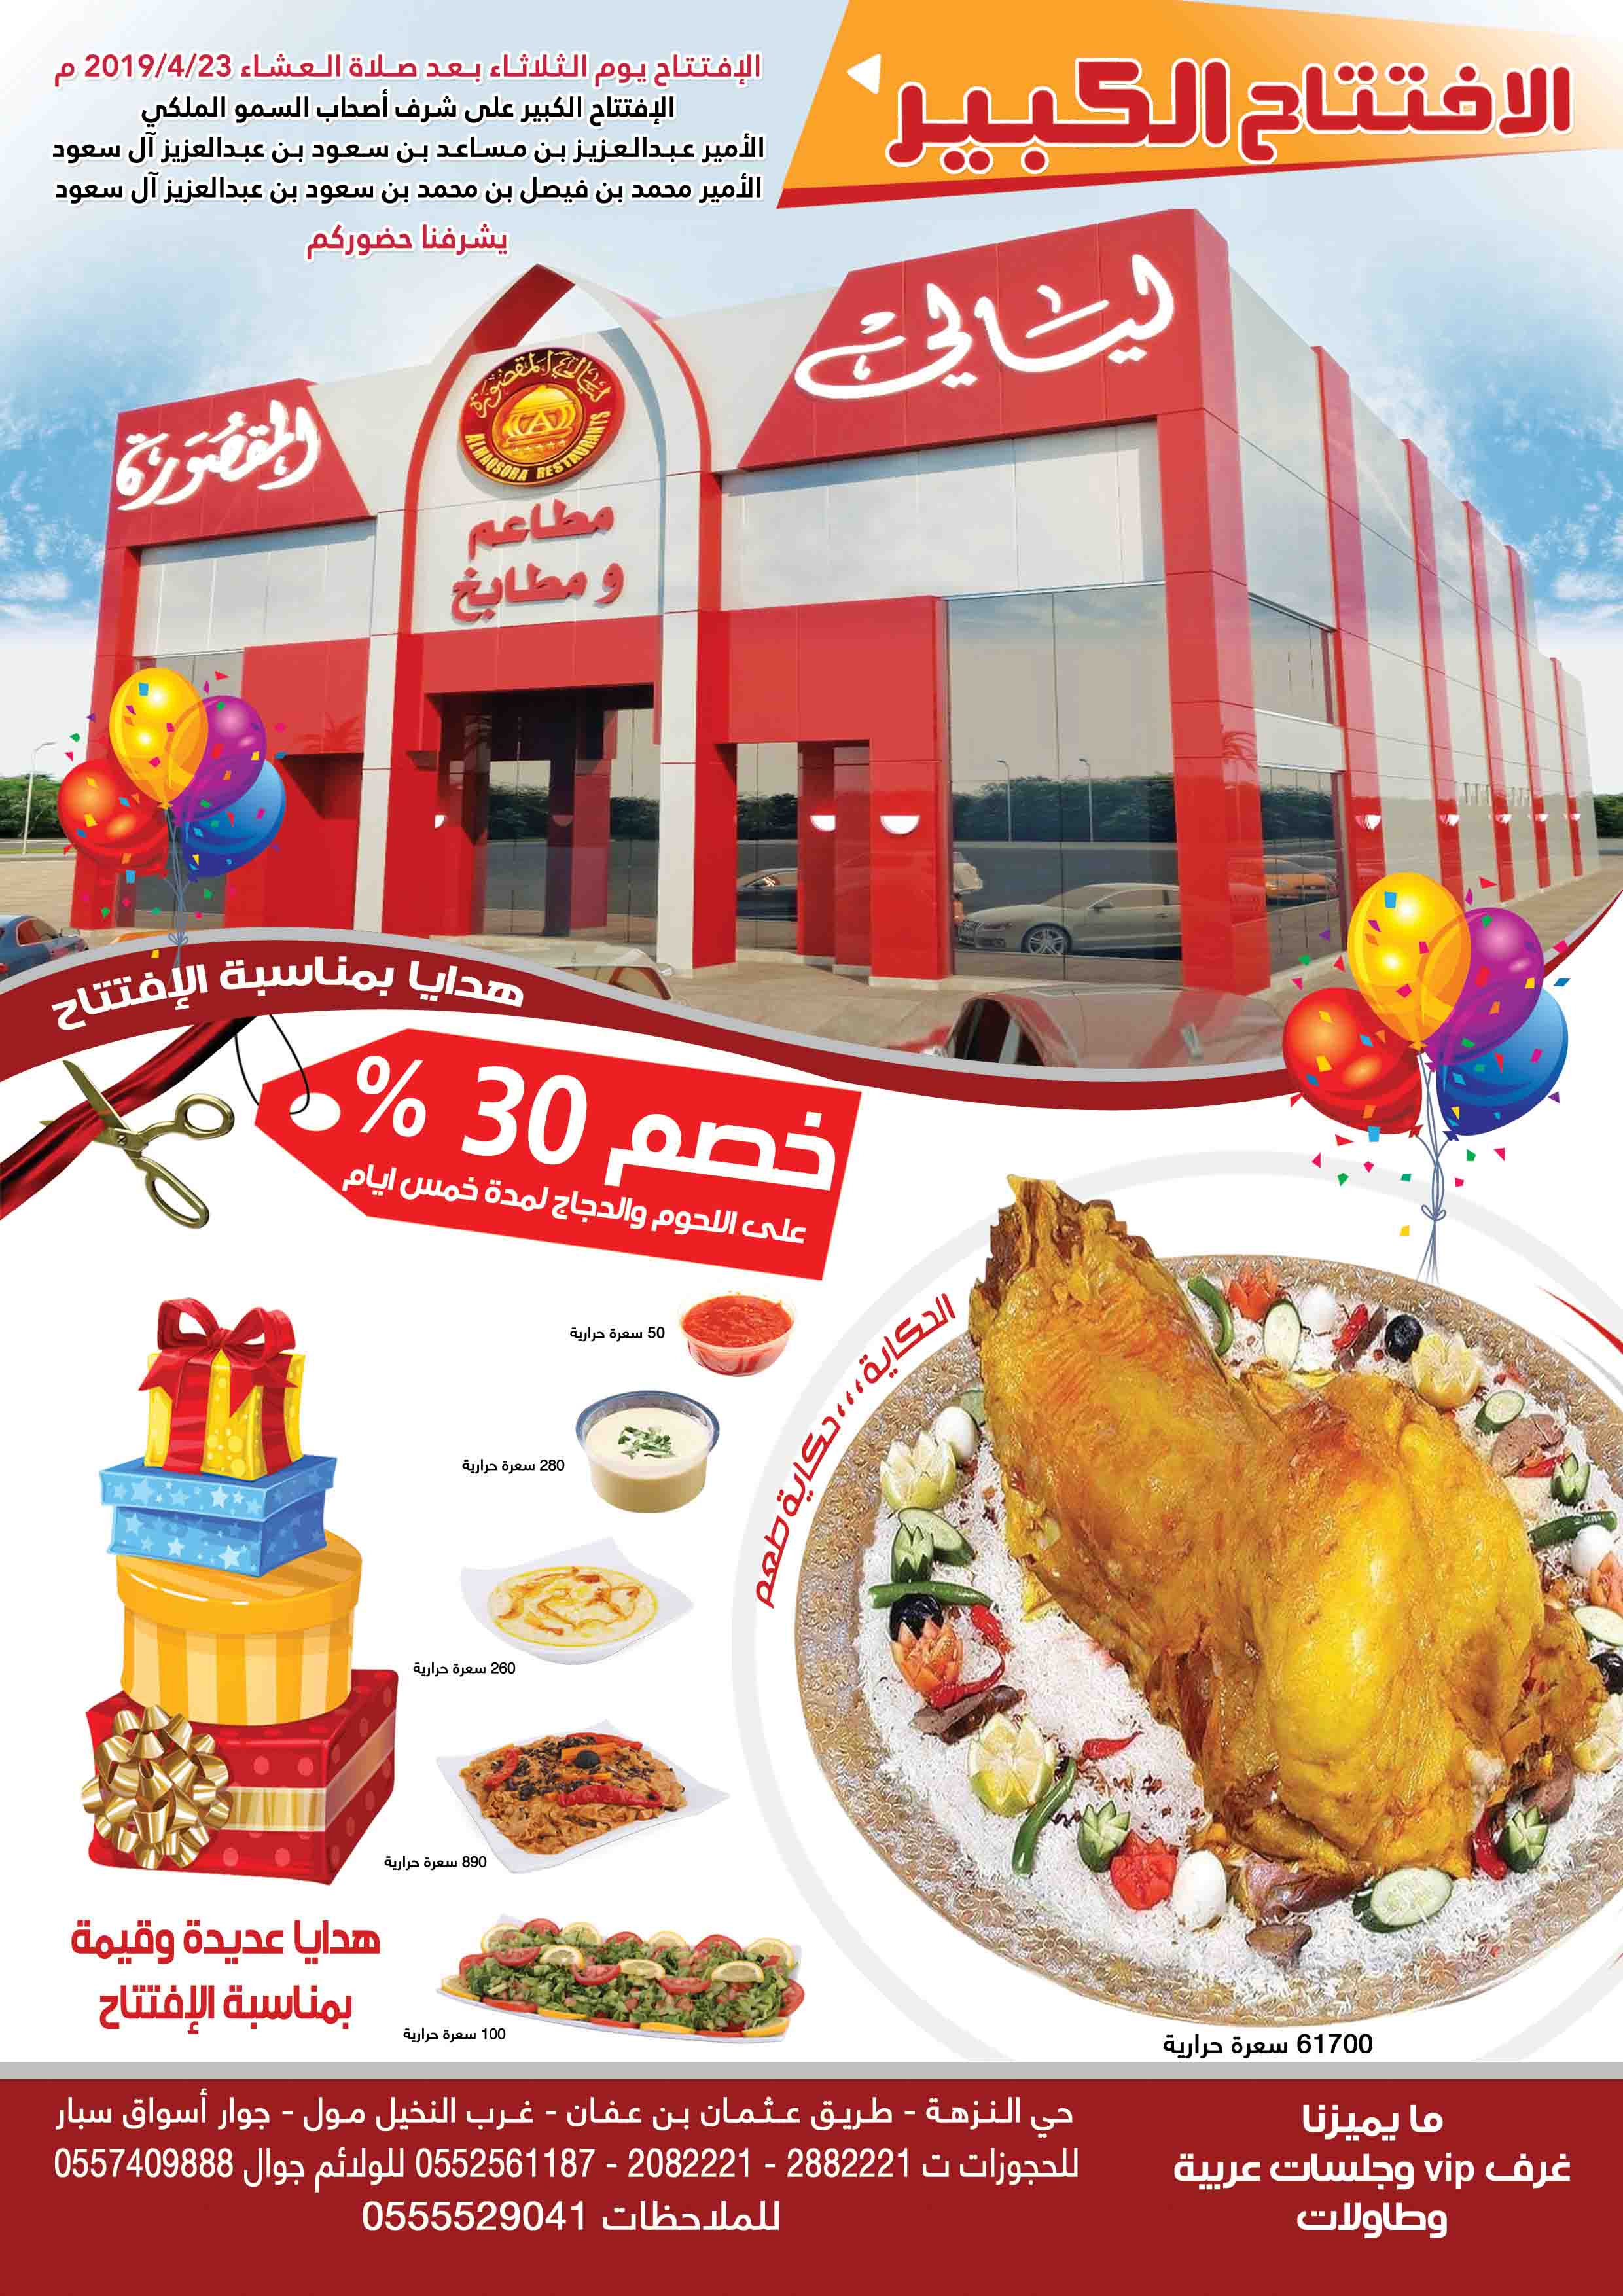 افتتاح مطاعم ليالي المقصورة الرياض حي النزهة  P_1208p9pay1